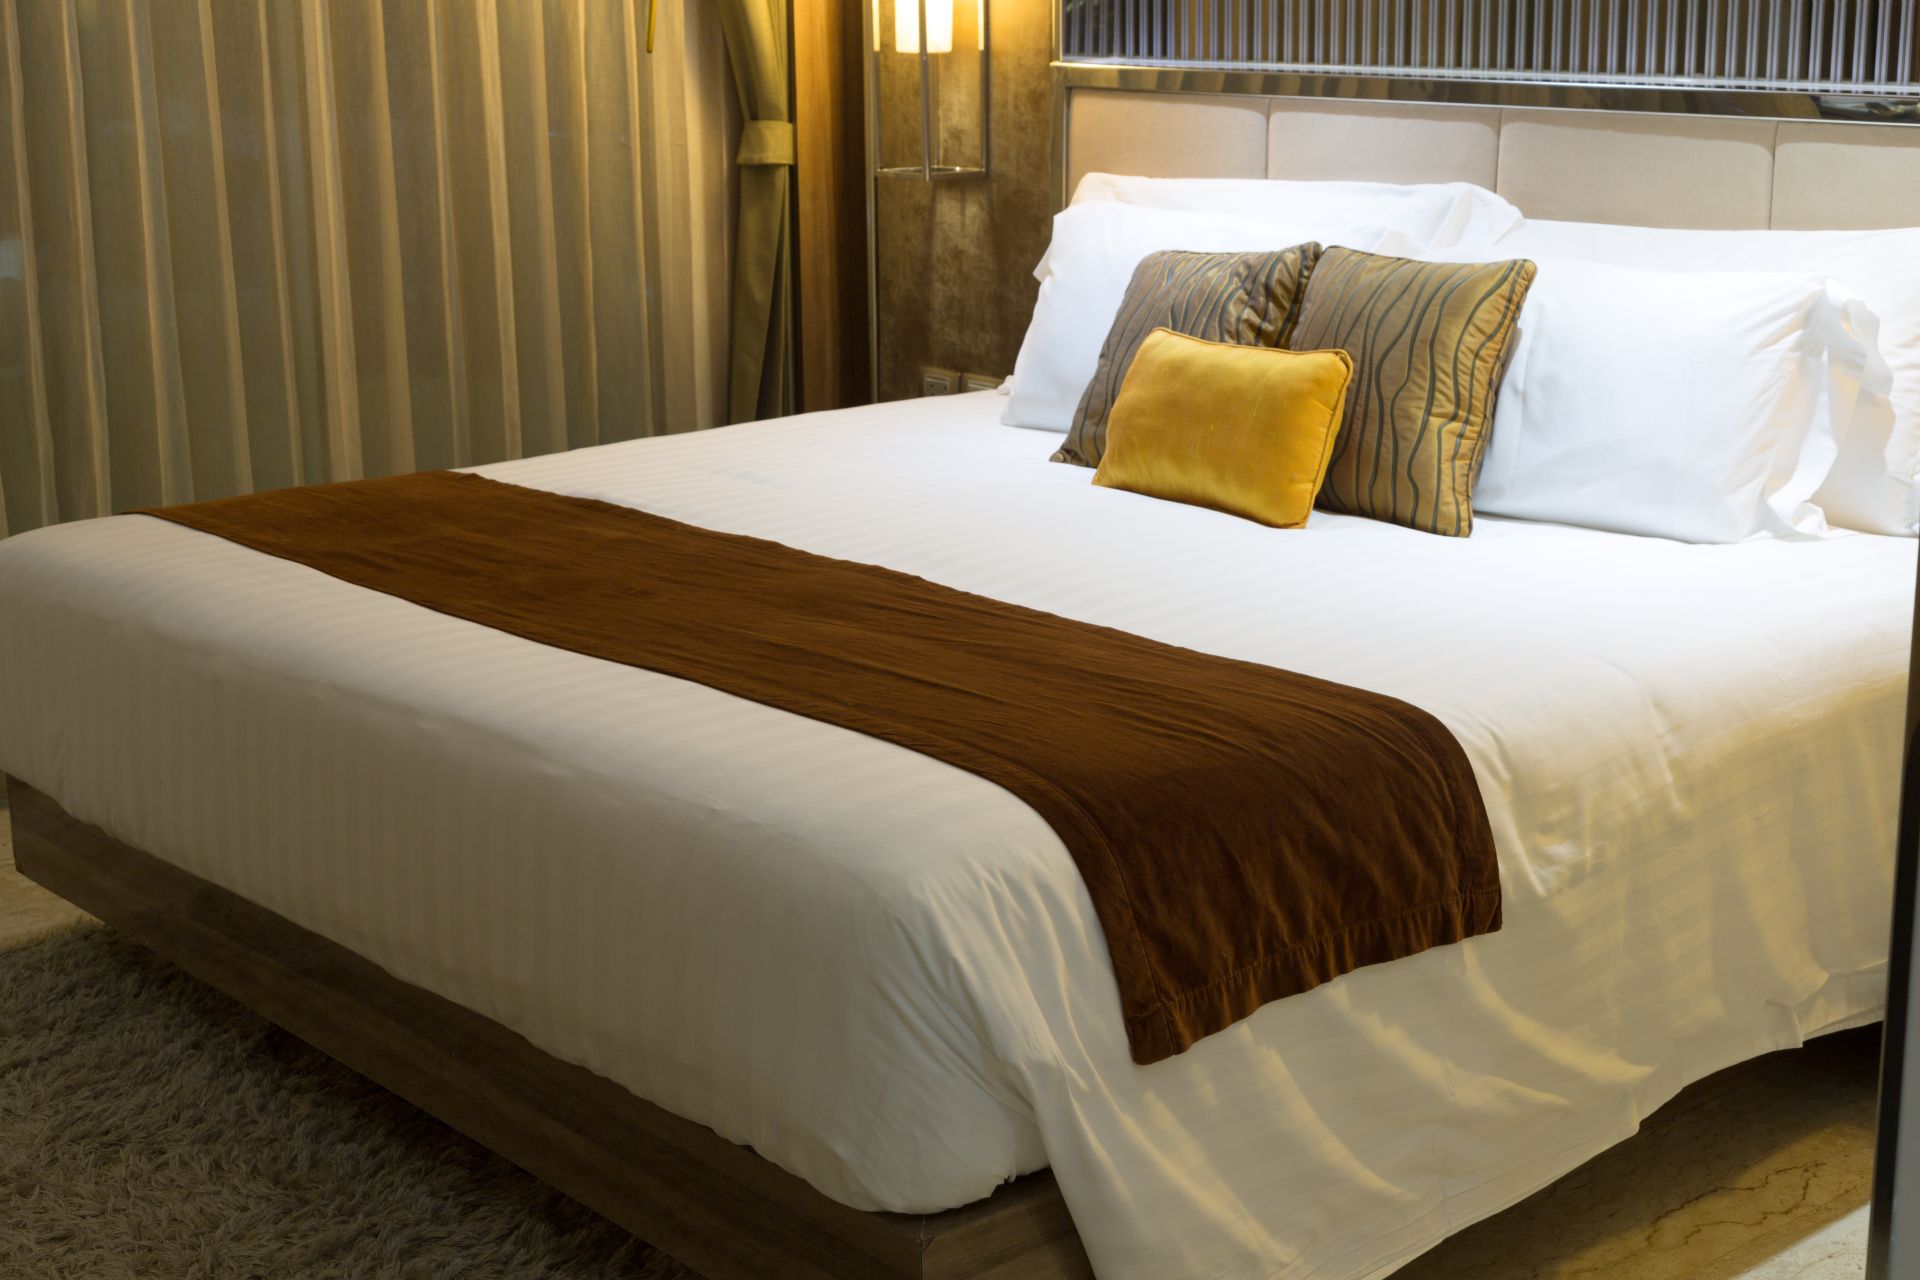 Фото на кровати в отеле